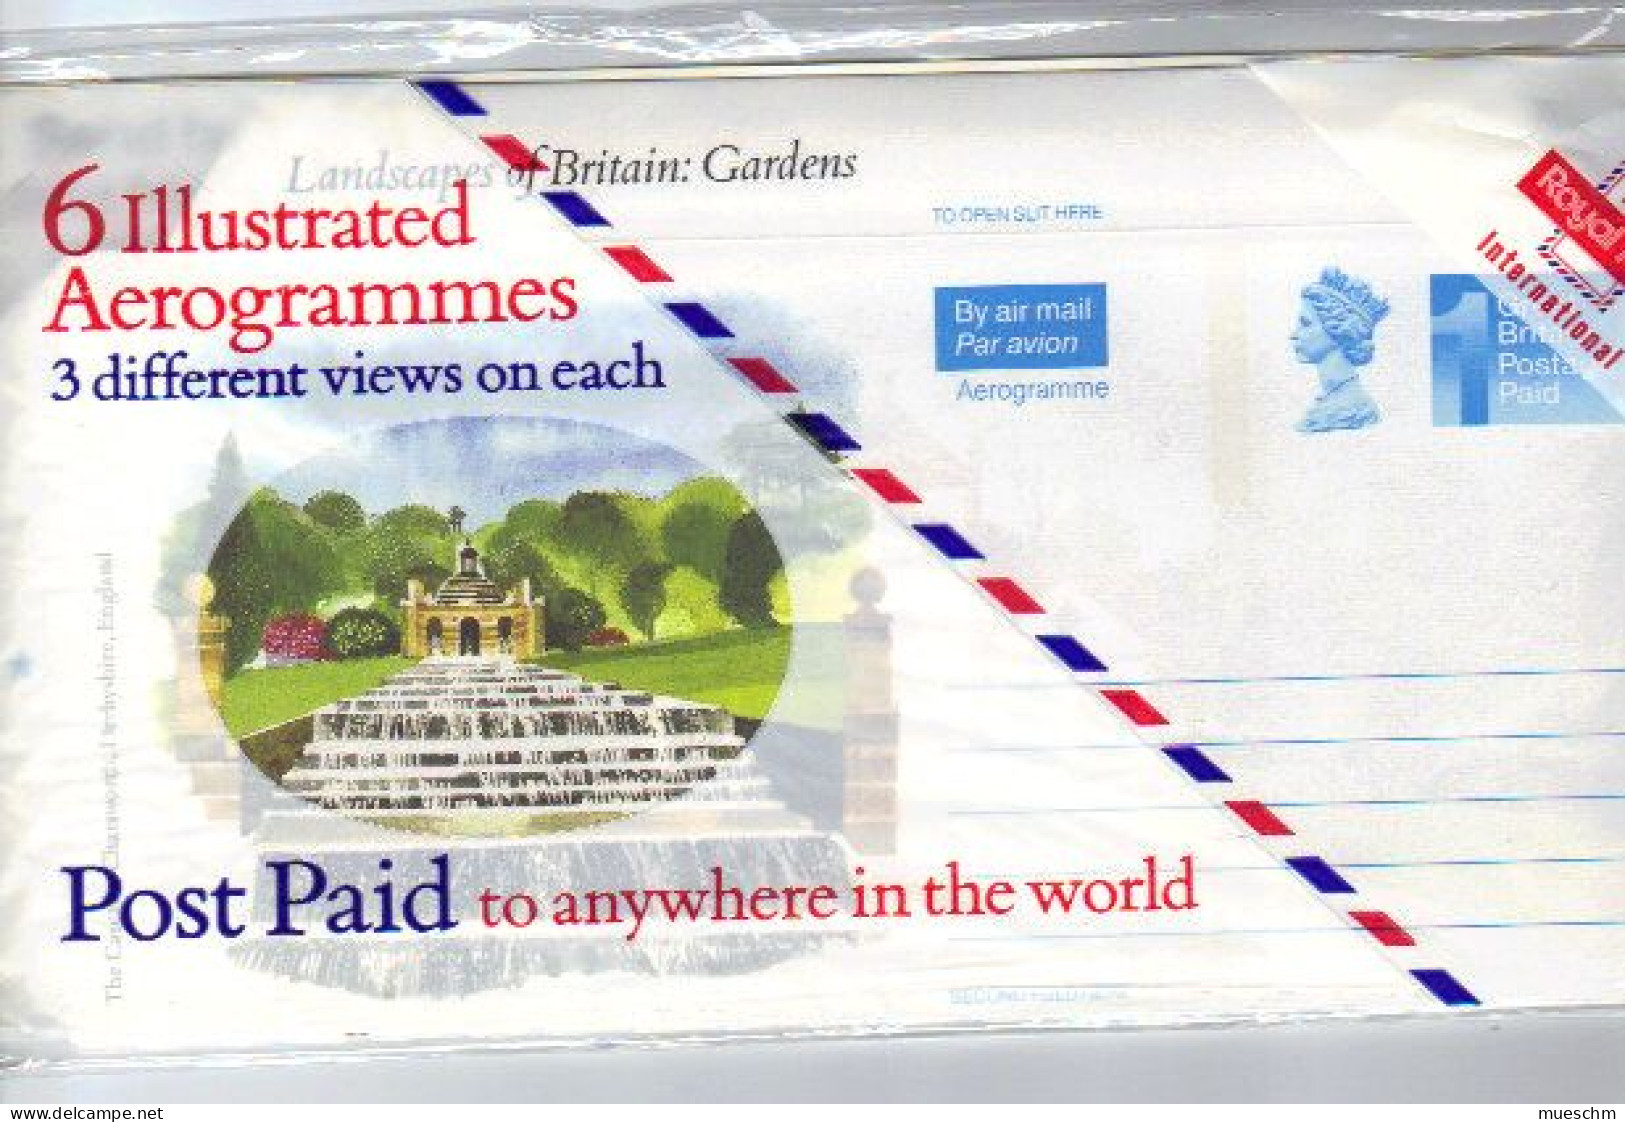 Großbritannien, 6 Aerogramme Aus Serie "Landscapes Of Britain: Gardens", Originalverpackt (9753W) - Material Postal